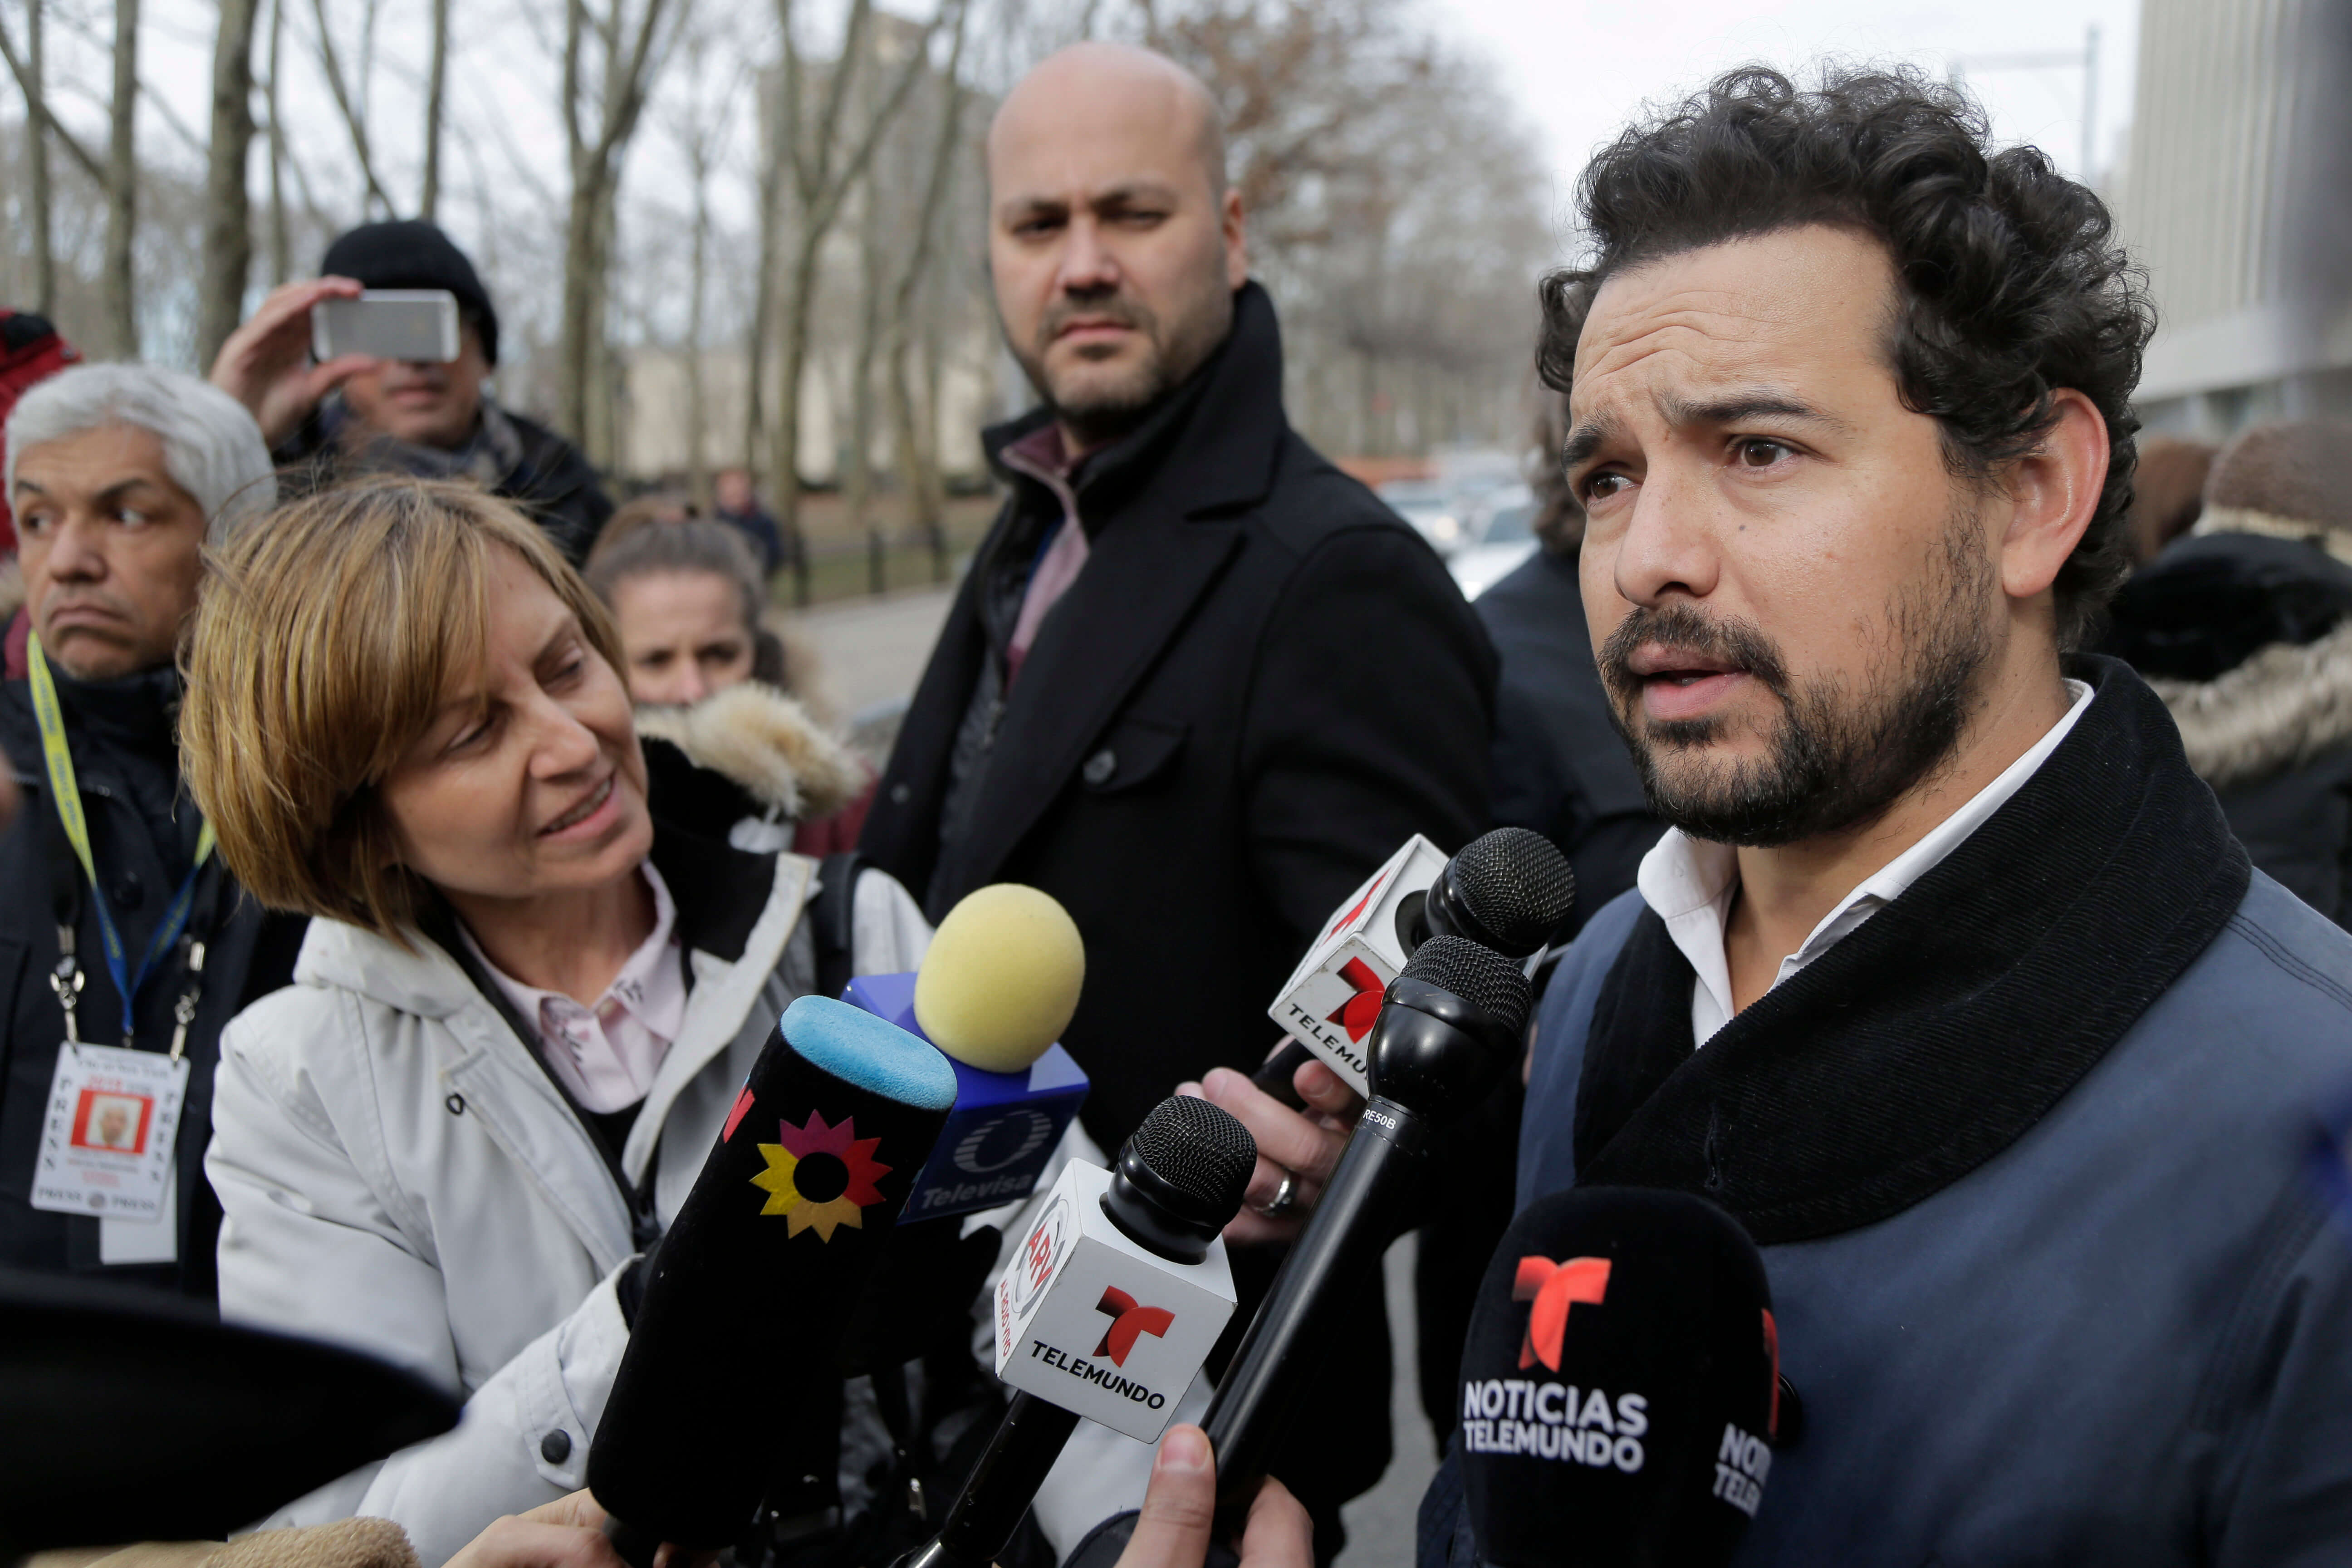 FOTO Actor que interpreta a "El Chapo" acude a juicio / Nueva York, Estados Unidos 28 enero 2019